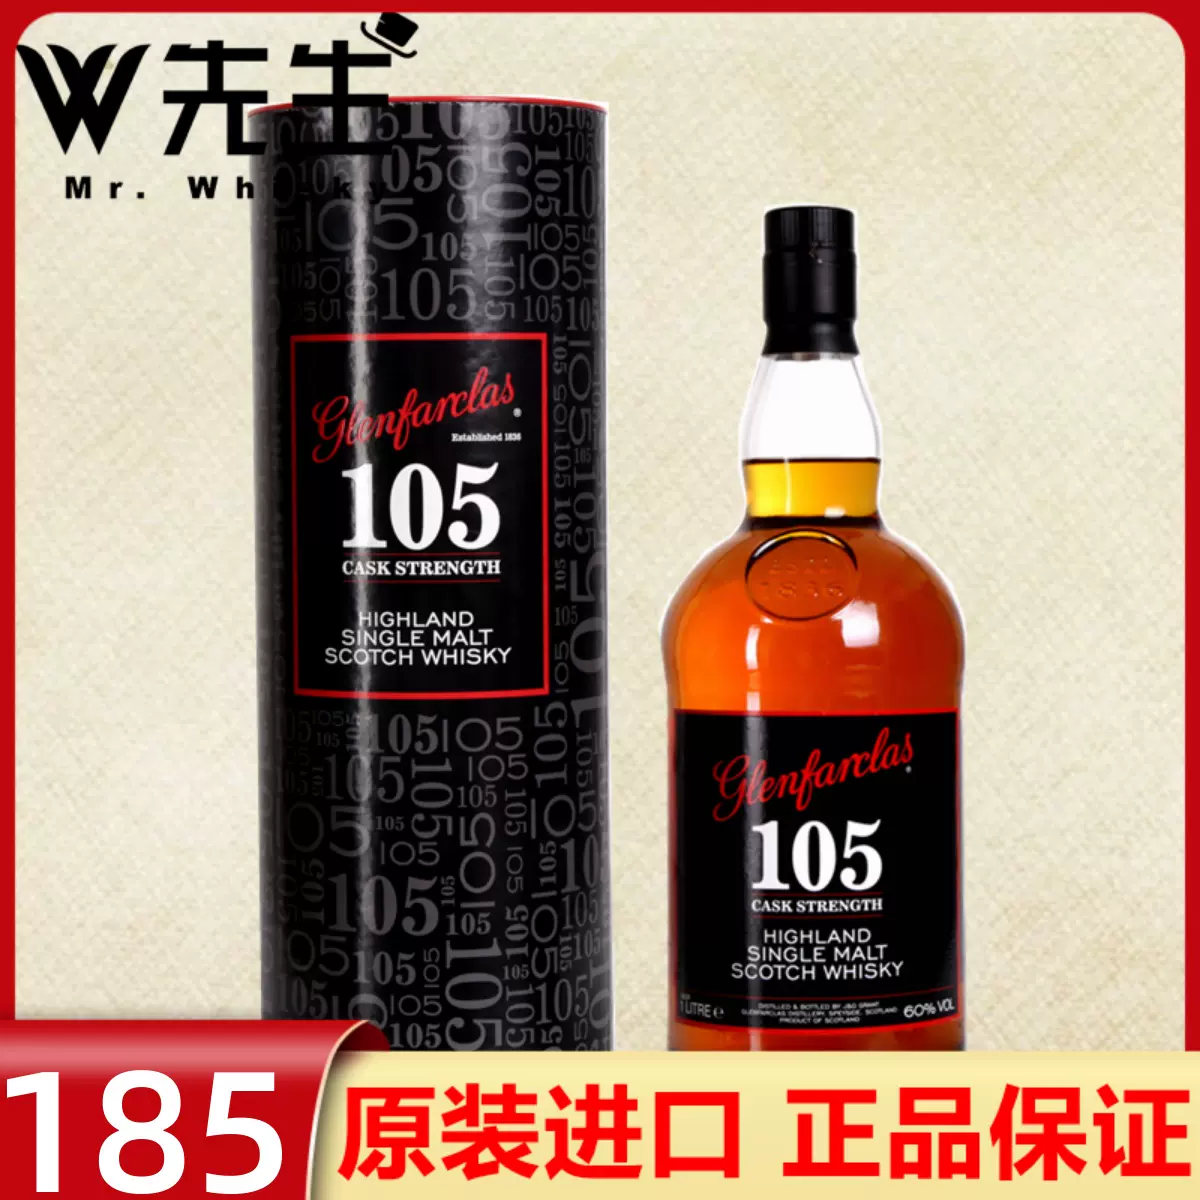 厚岸寒露单一麦芽日本威士忌THEAKKESHI原装进口限量版日本威士忌-Taobao